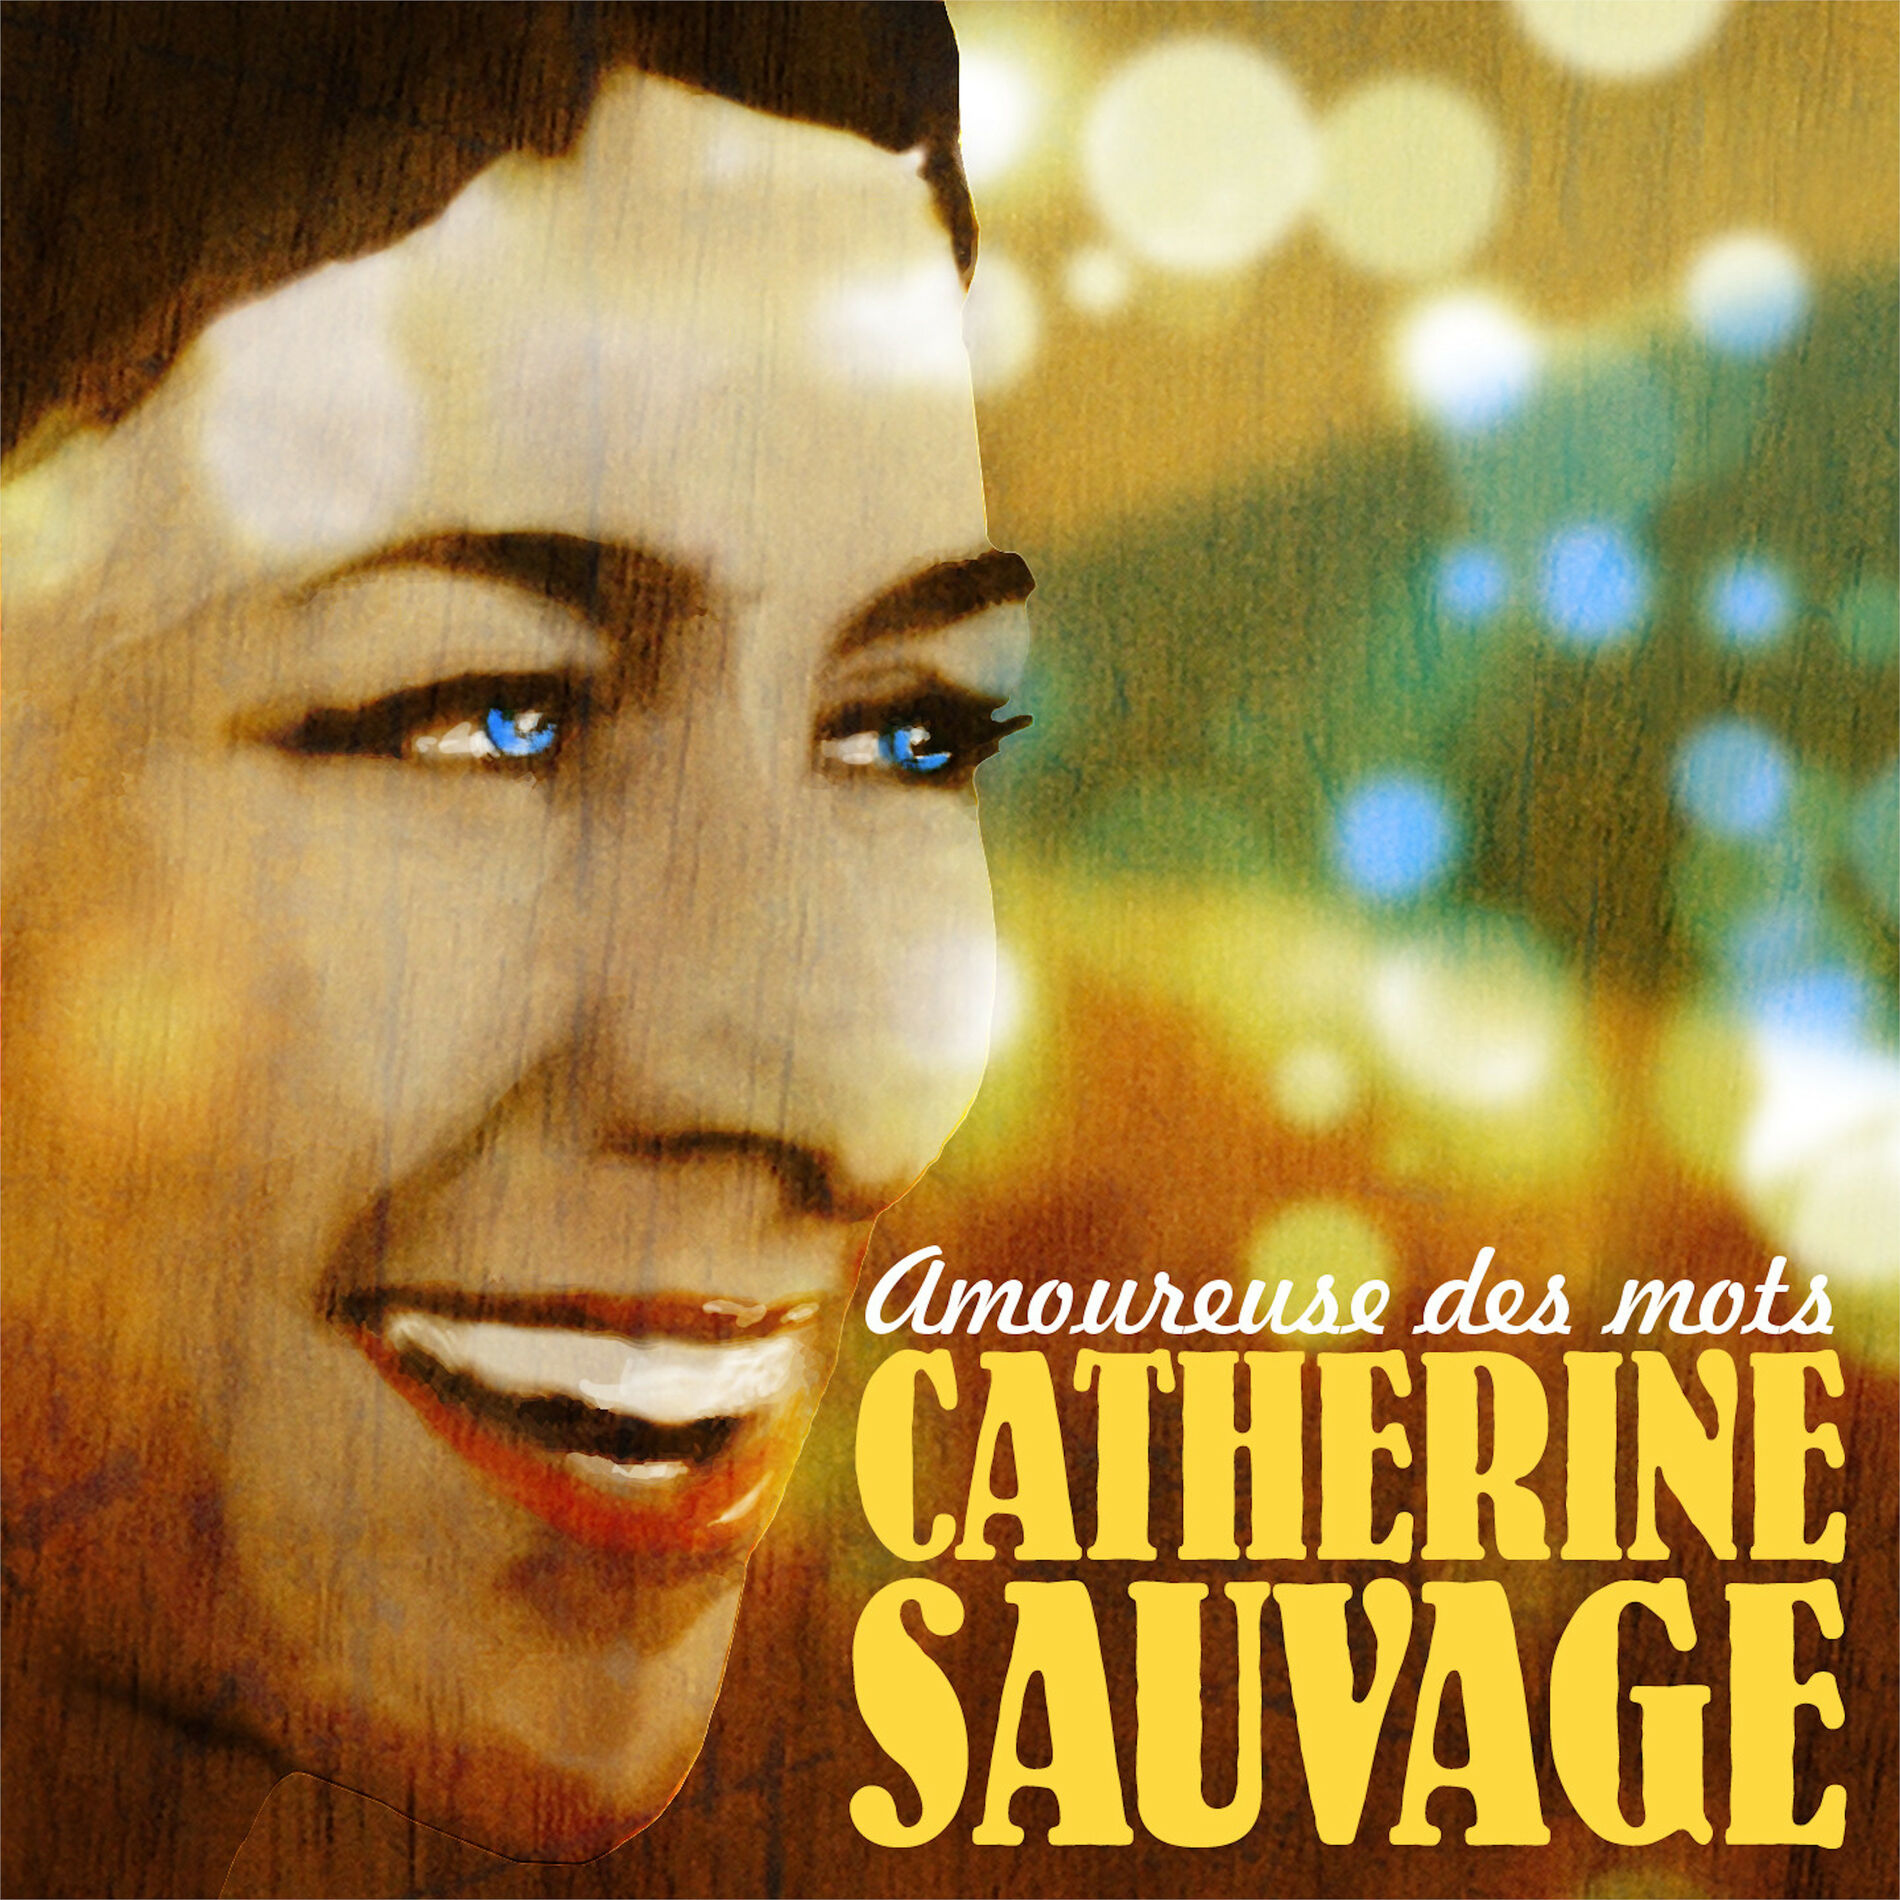 Musik von Catherine Sauvage: Alben, Lieder, Songtexte | Auf Deezer 